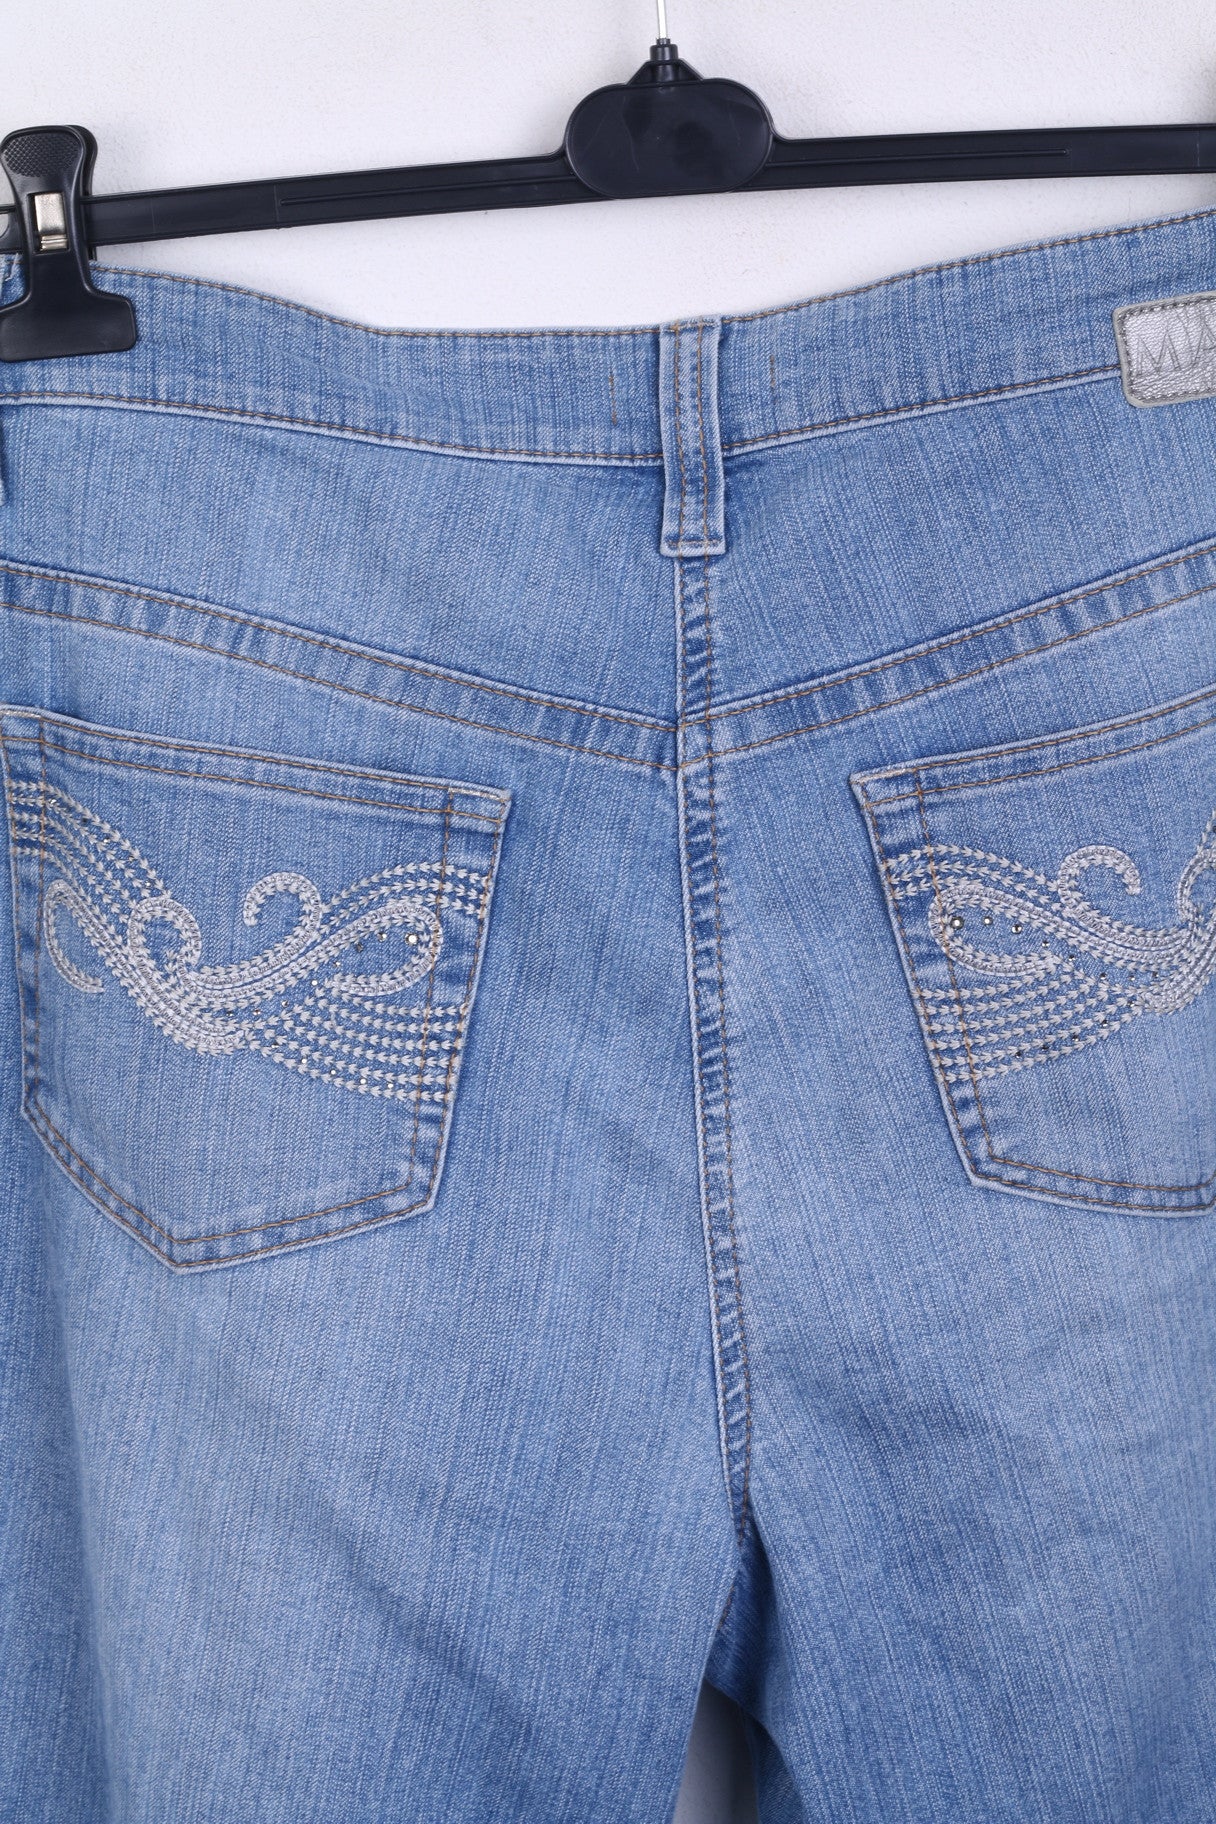 MAC Jeans Womens 46/32 Trousers Denim Jeans Blue Light Wash Cotton